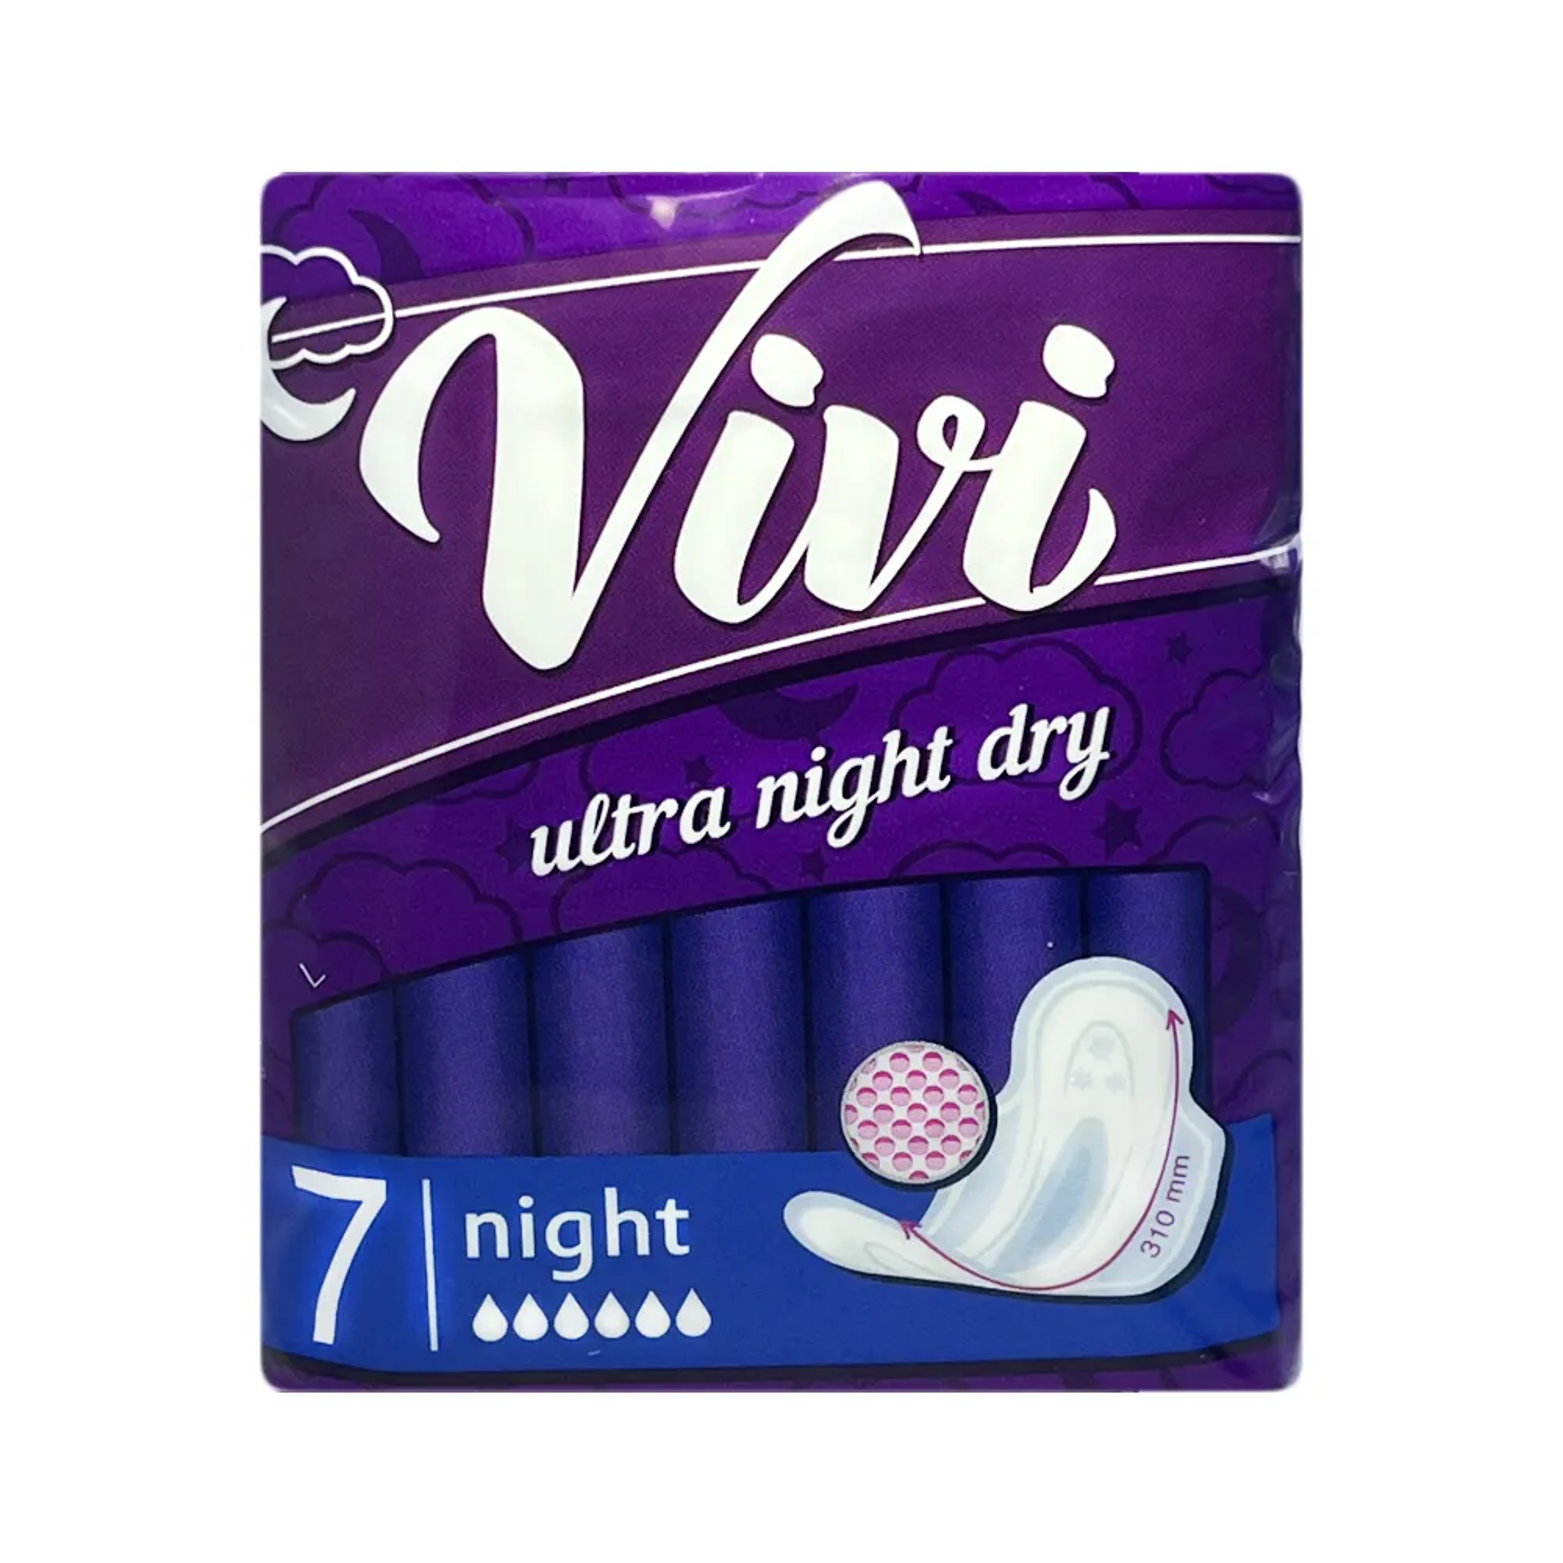 Прокладки женские гигиенические Vivi Ultra Night Dry ночные 7 шт прокладки женские bella perfecta ultra night 7 шт с покрытием silky drai be 013 mw07 032